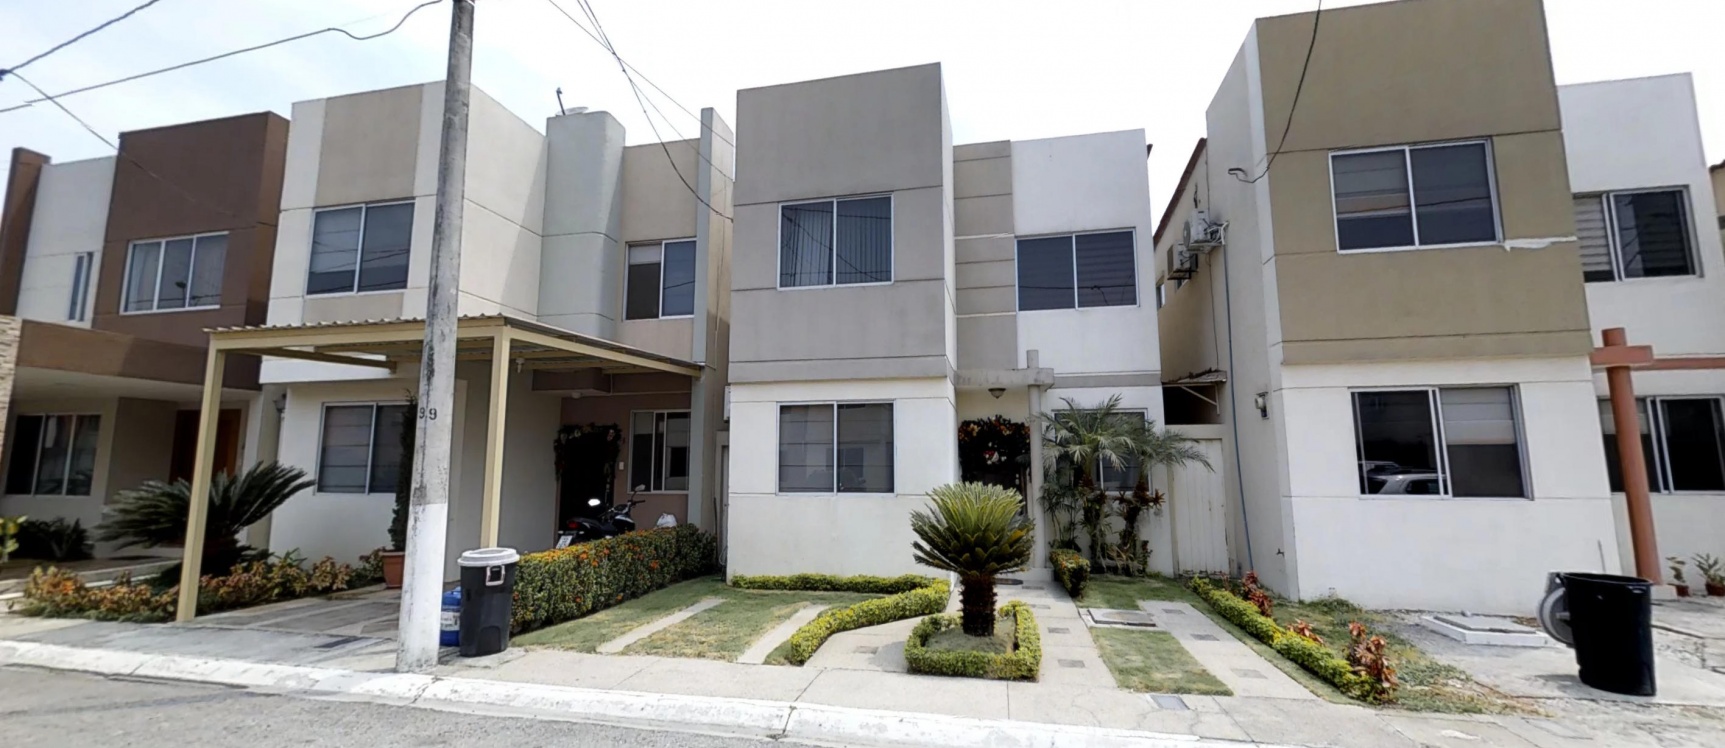 GeoBienes - Casa en venta en urbanización Castilla Via Samborondon  - Plusvalia Guayaquil Casas de venta y alquiler Inmobiliaria Ecuador